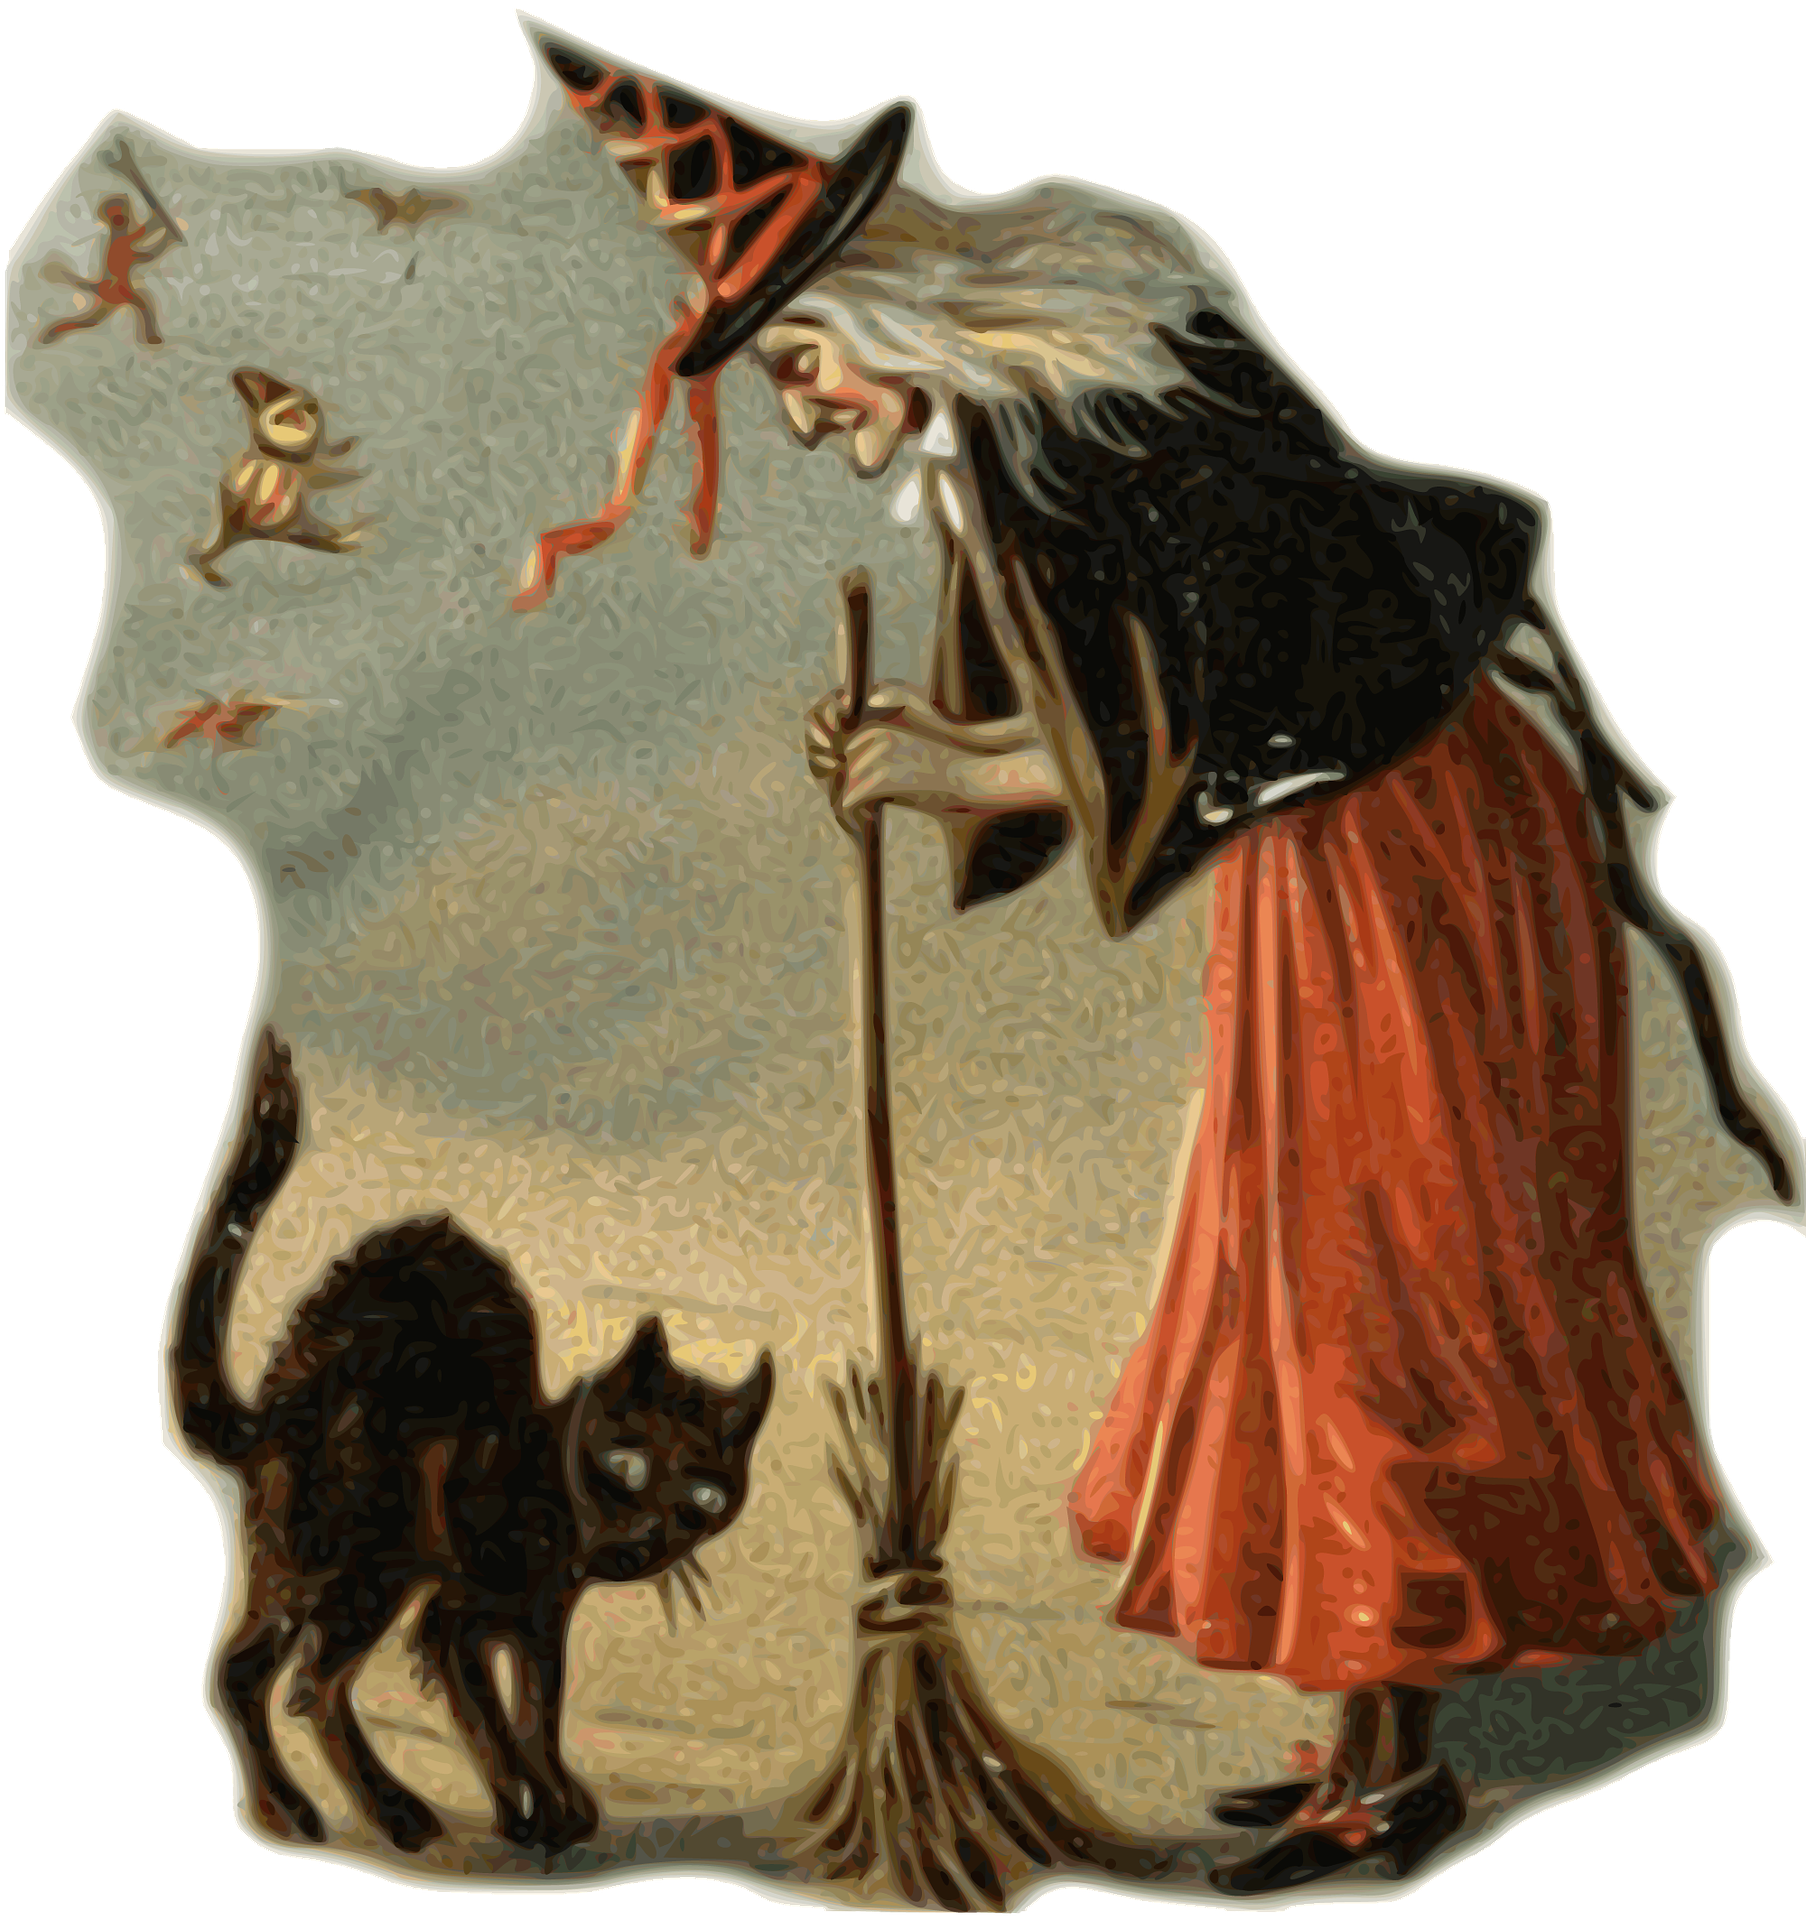 Hexe in Märchen mit Katze (c) pixabay